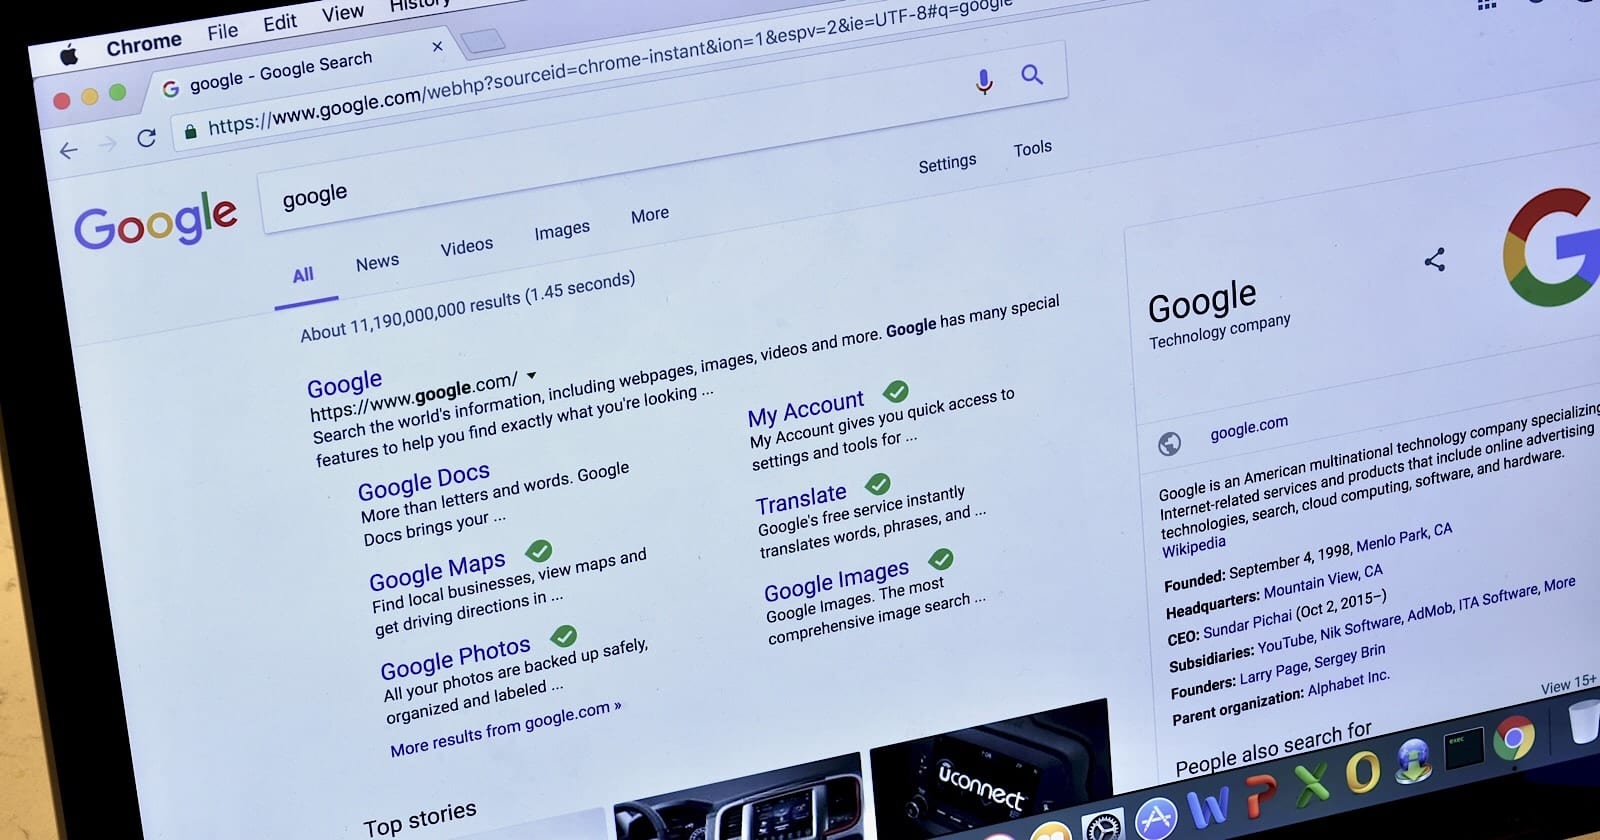 Console Search: Google elimina las URL solicitadas en 24 horas